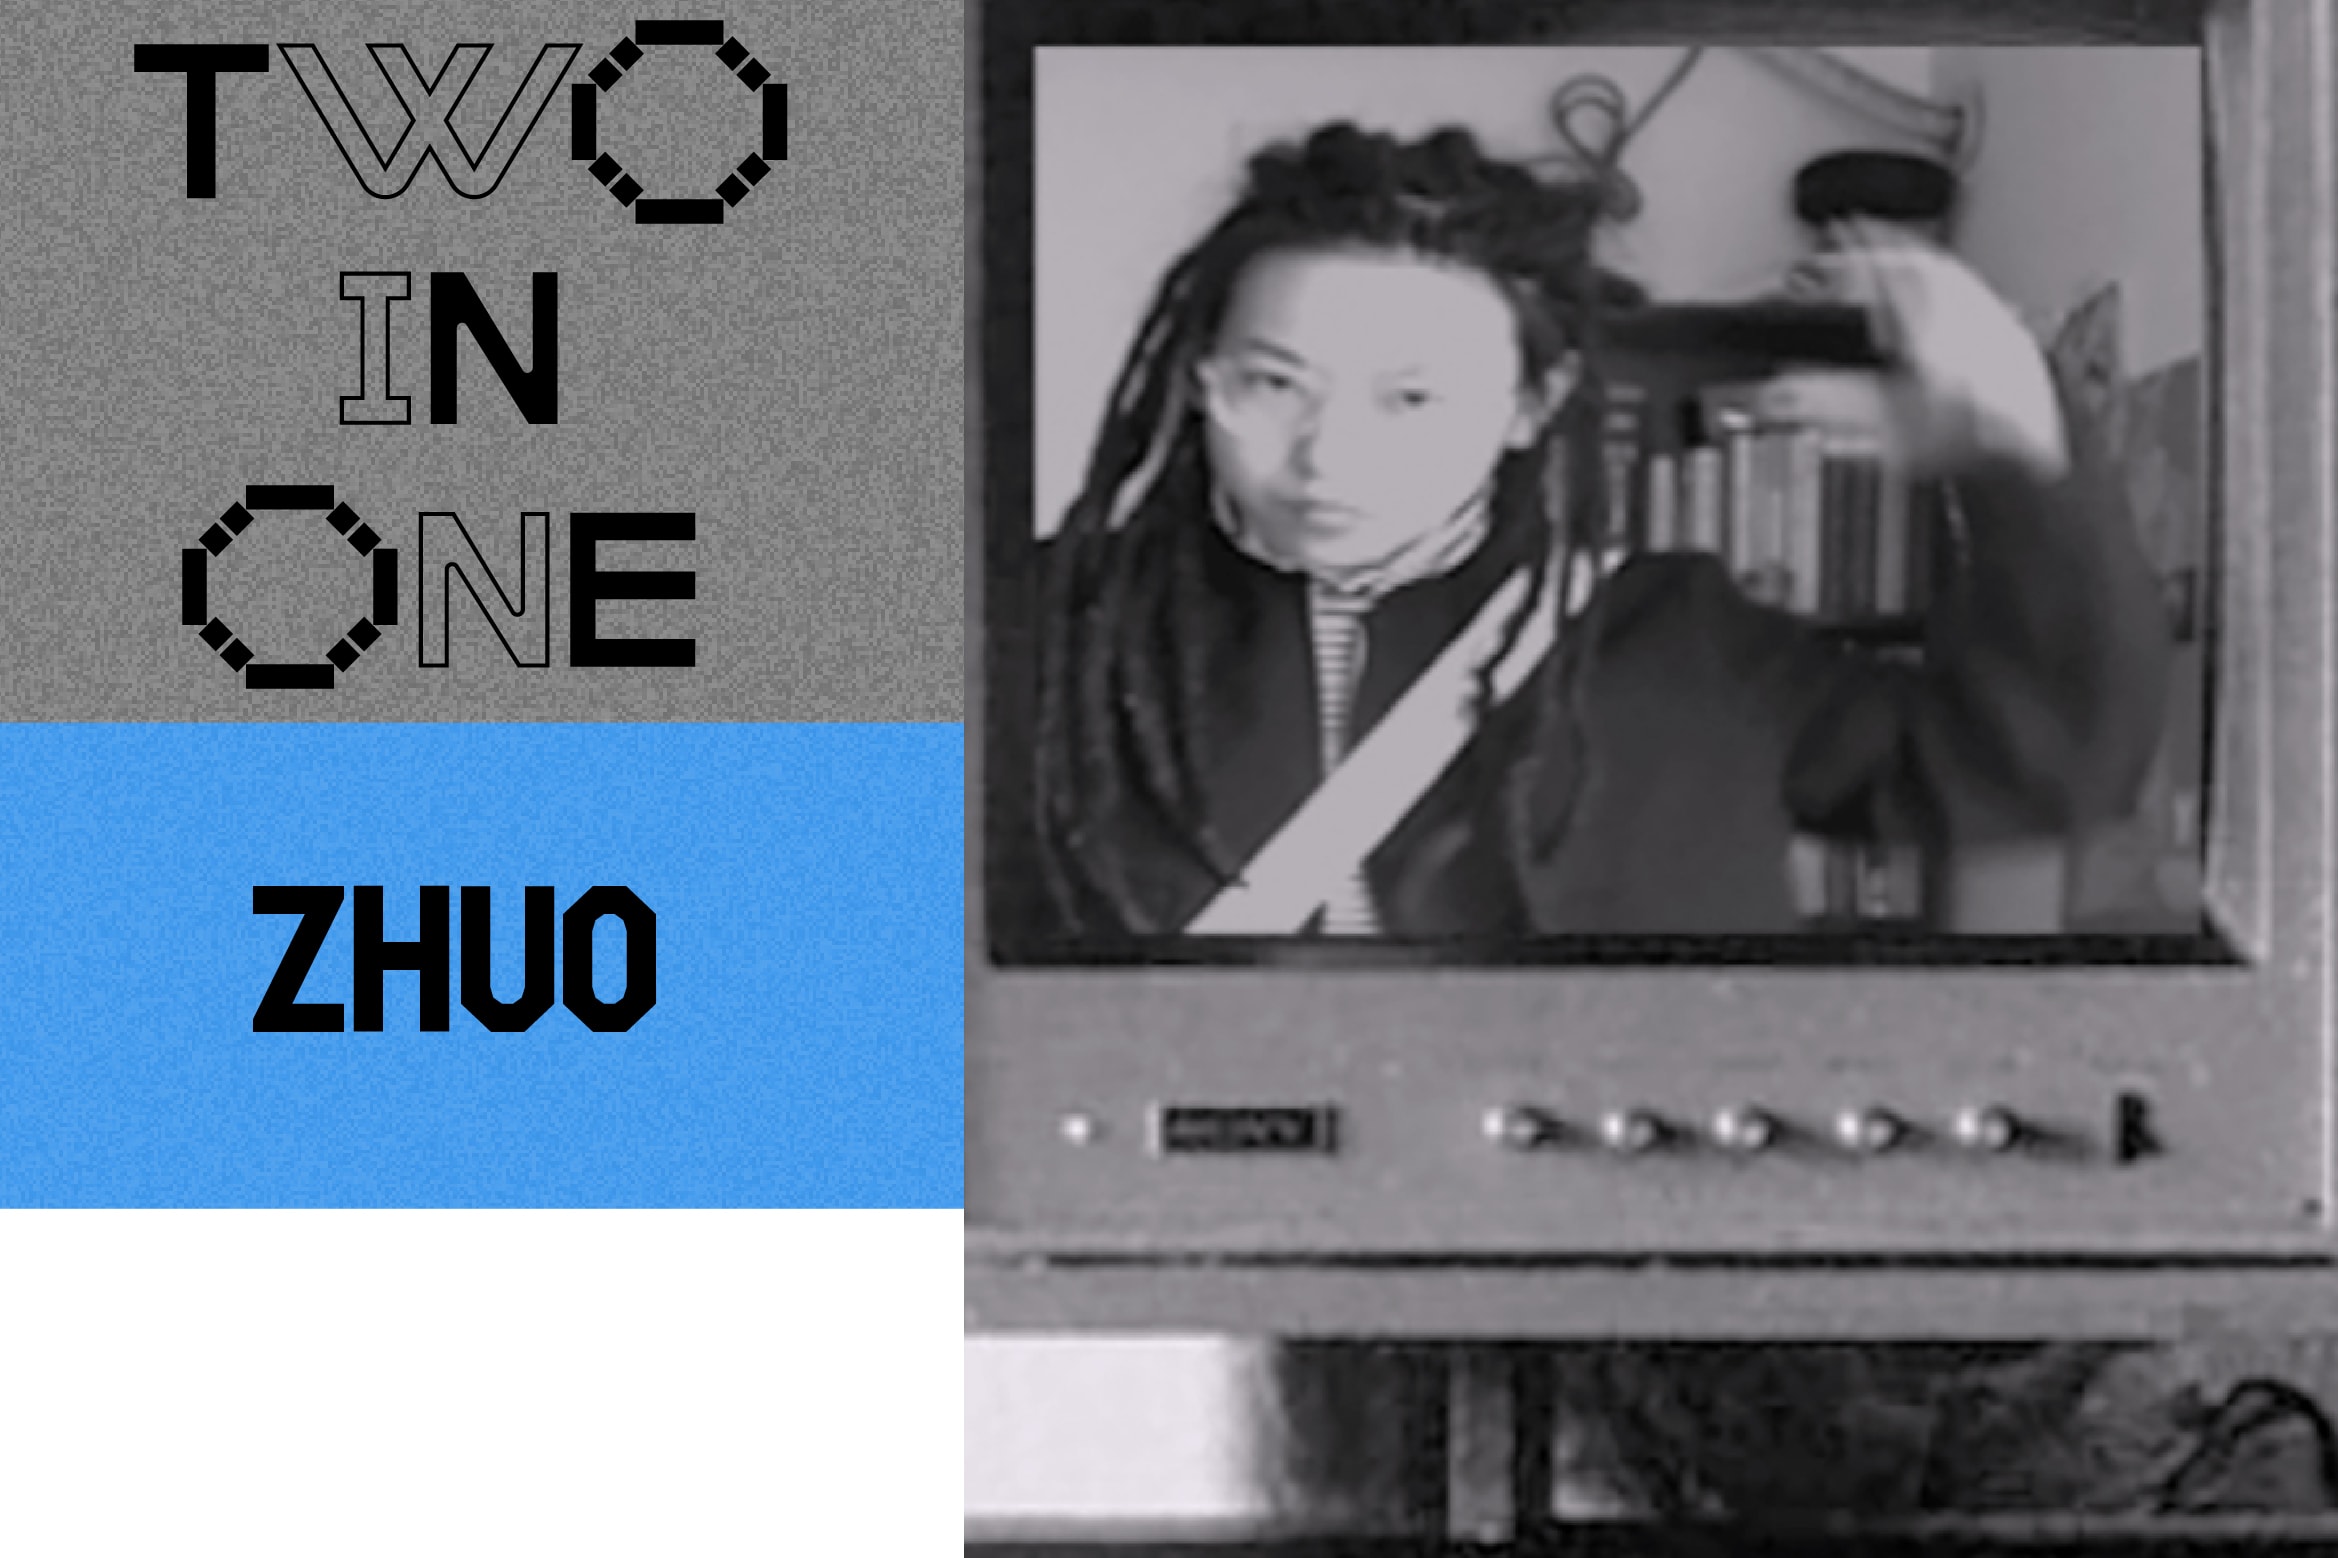 上海电子俱乐部 Heim 即将开启两周年「Two in One」主题活动